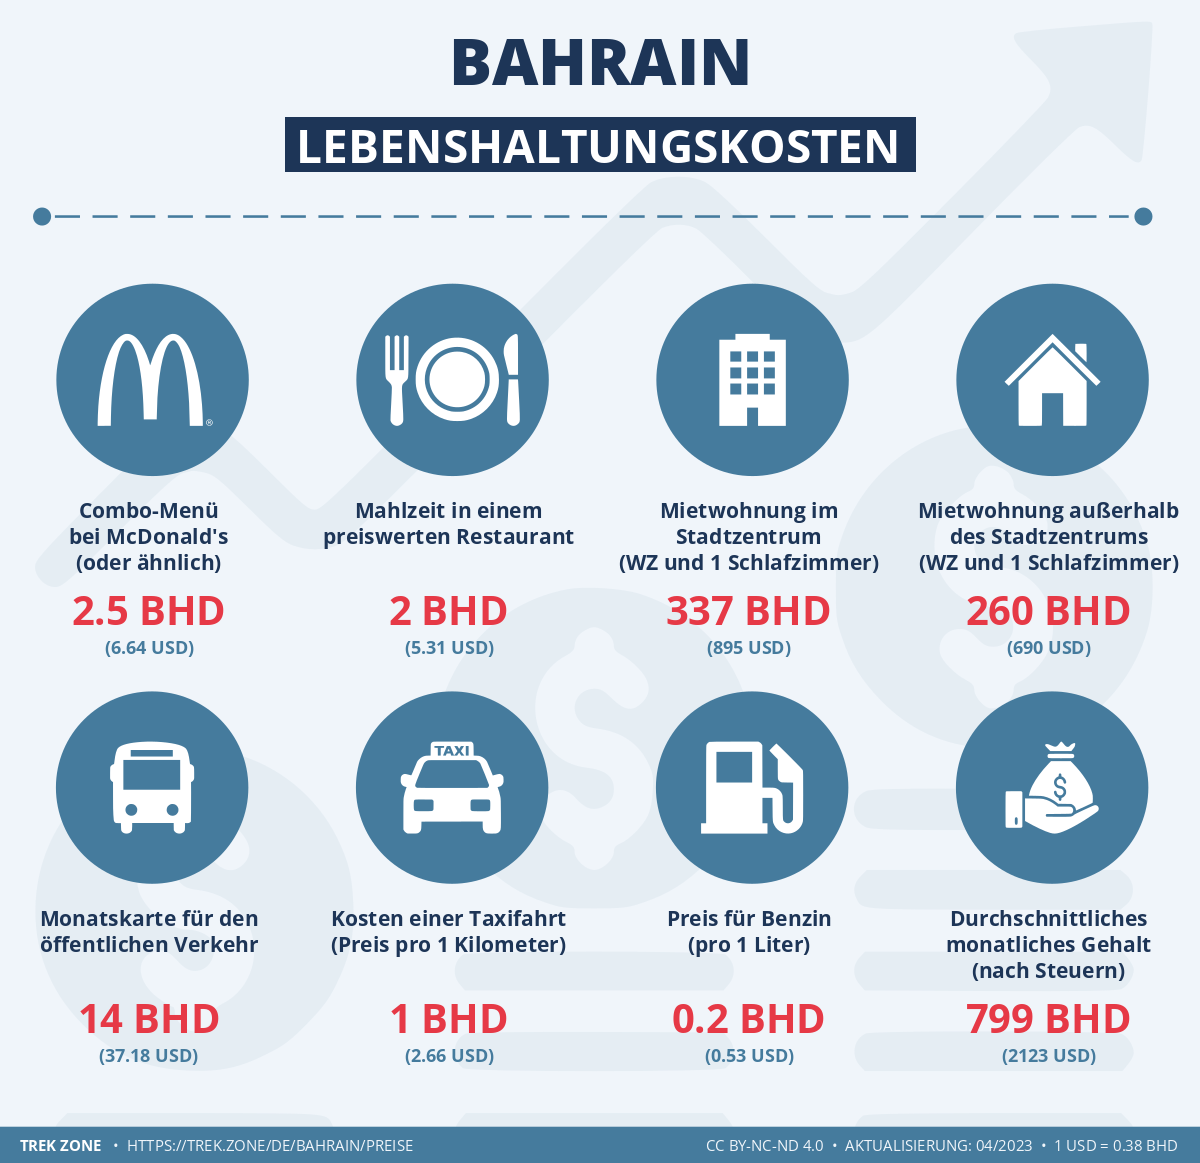 preise und lebenskosten bahrain